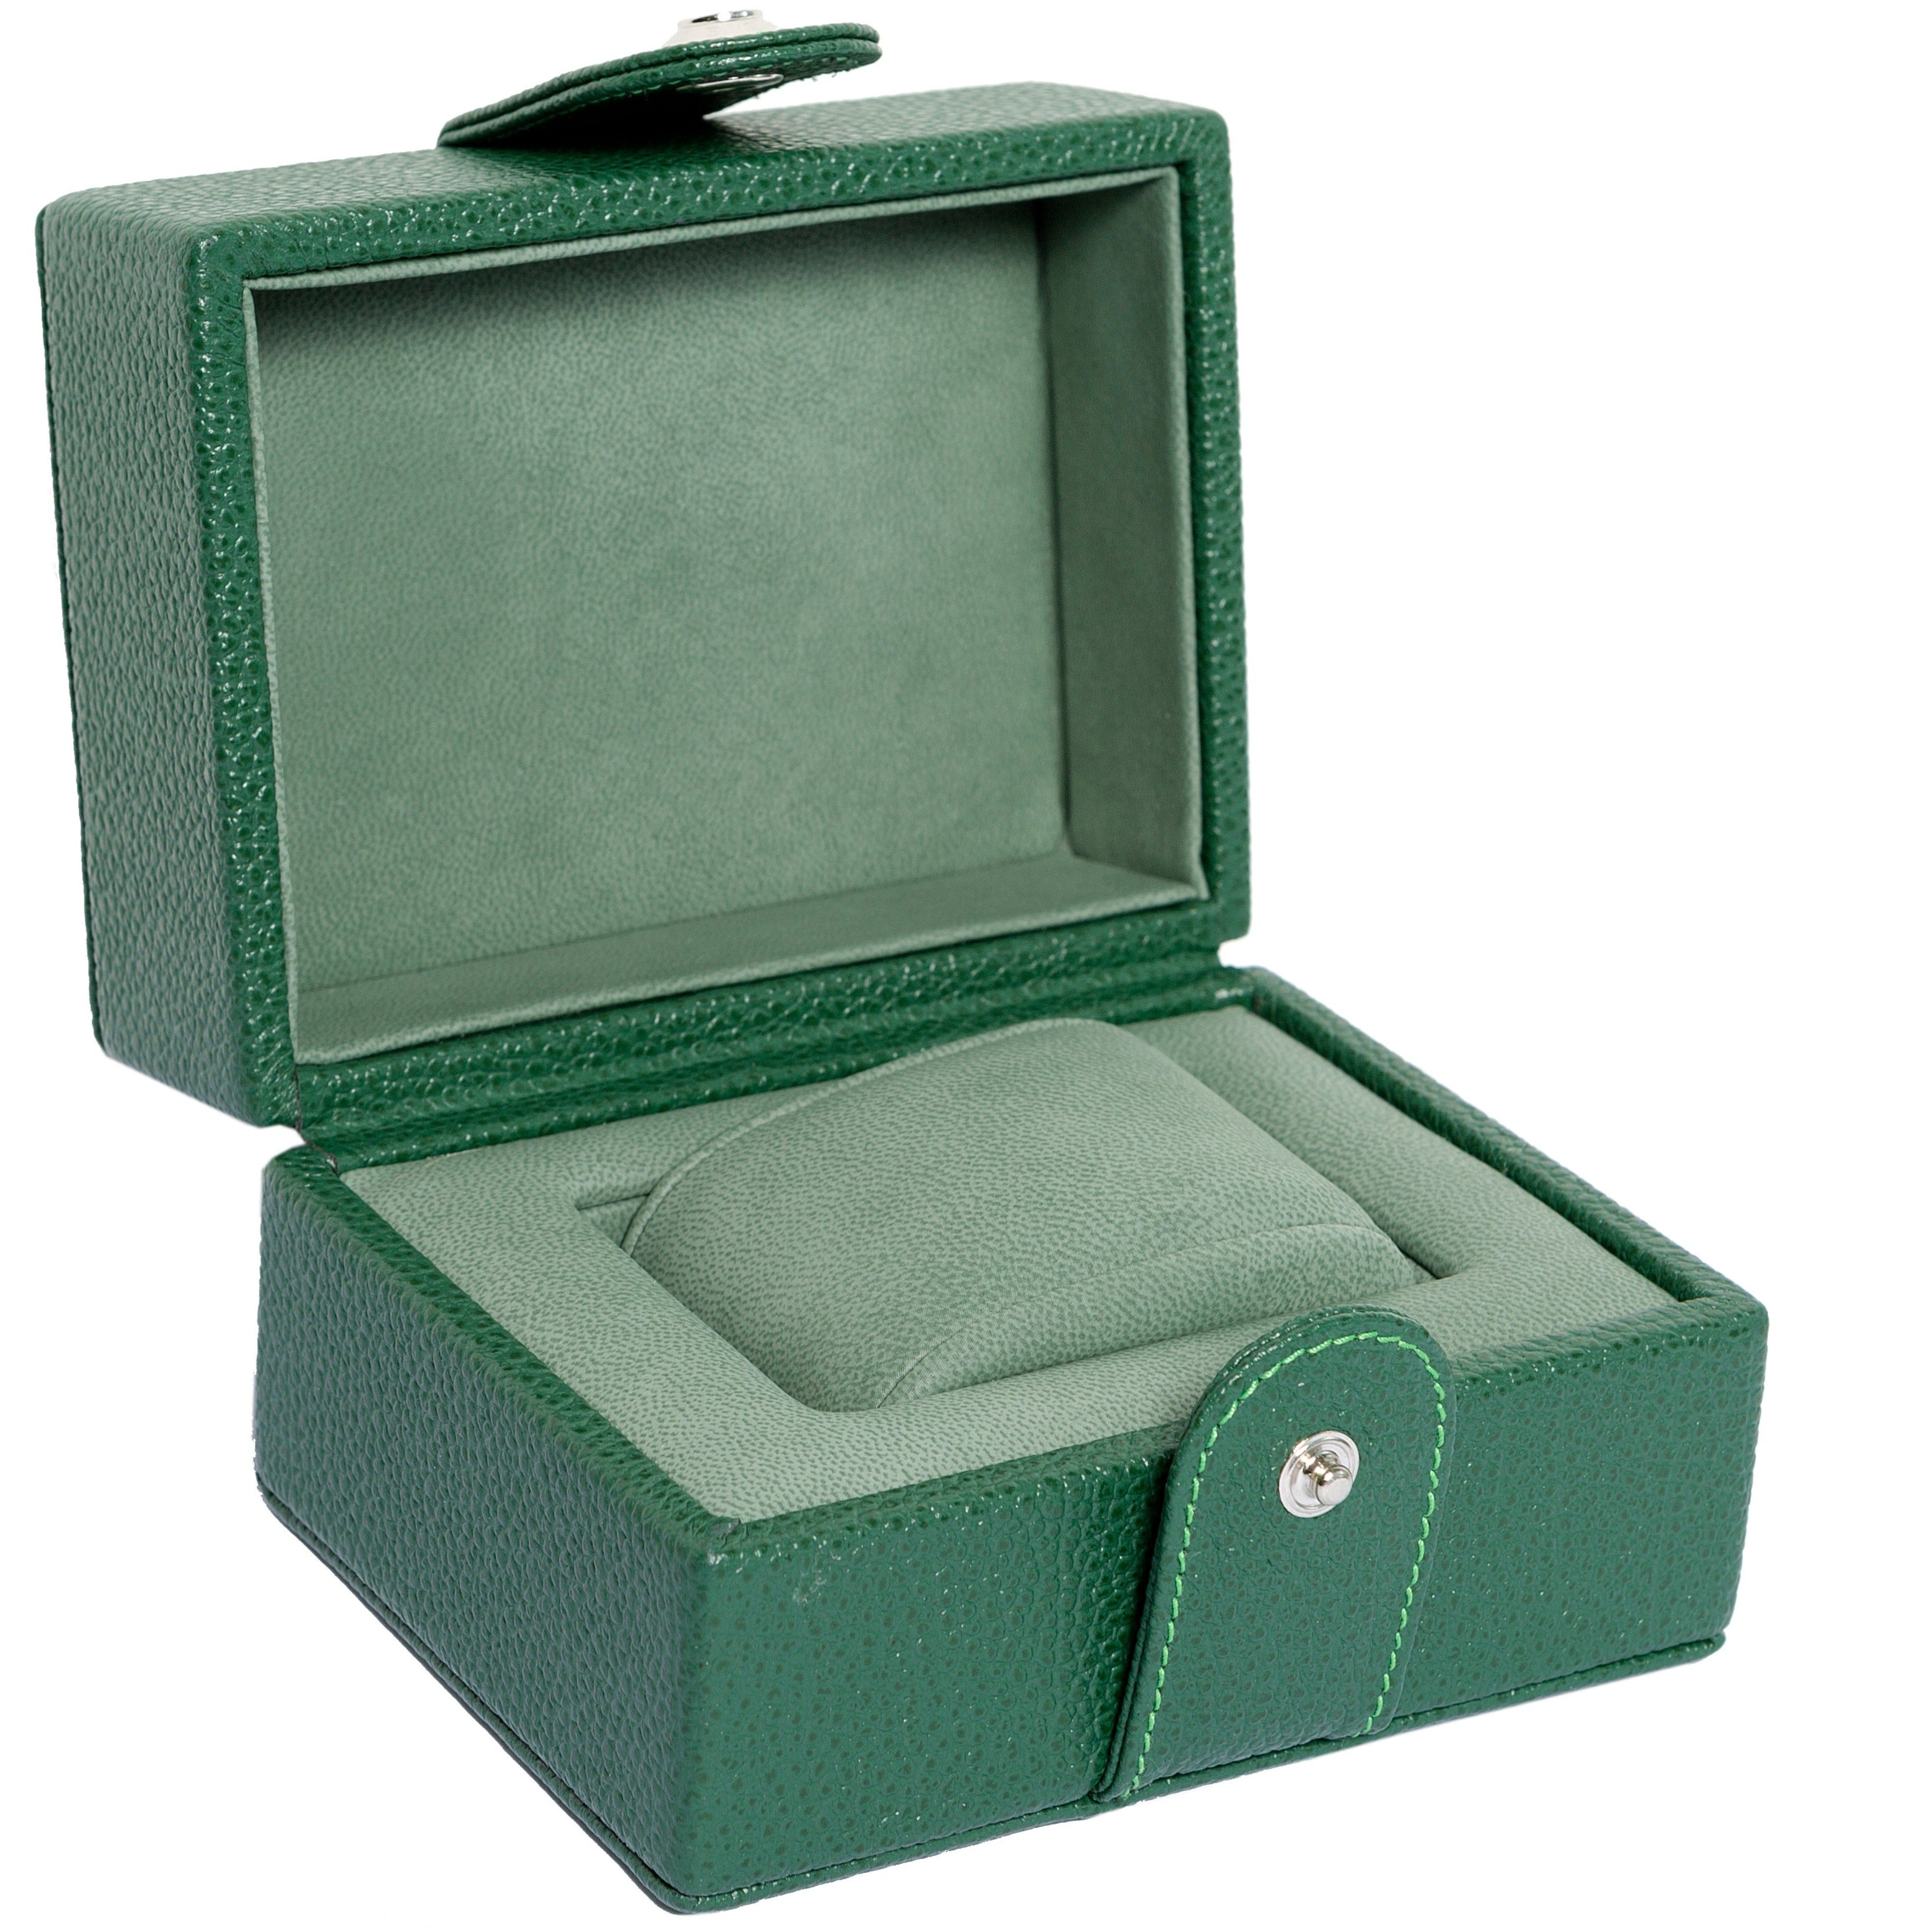 Underwood (London) - Single Watch Storage Case in Green Leather